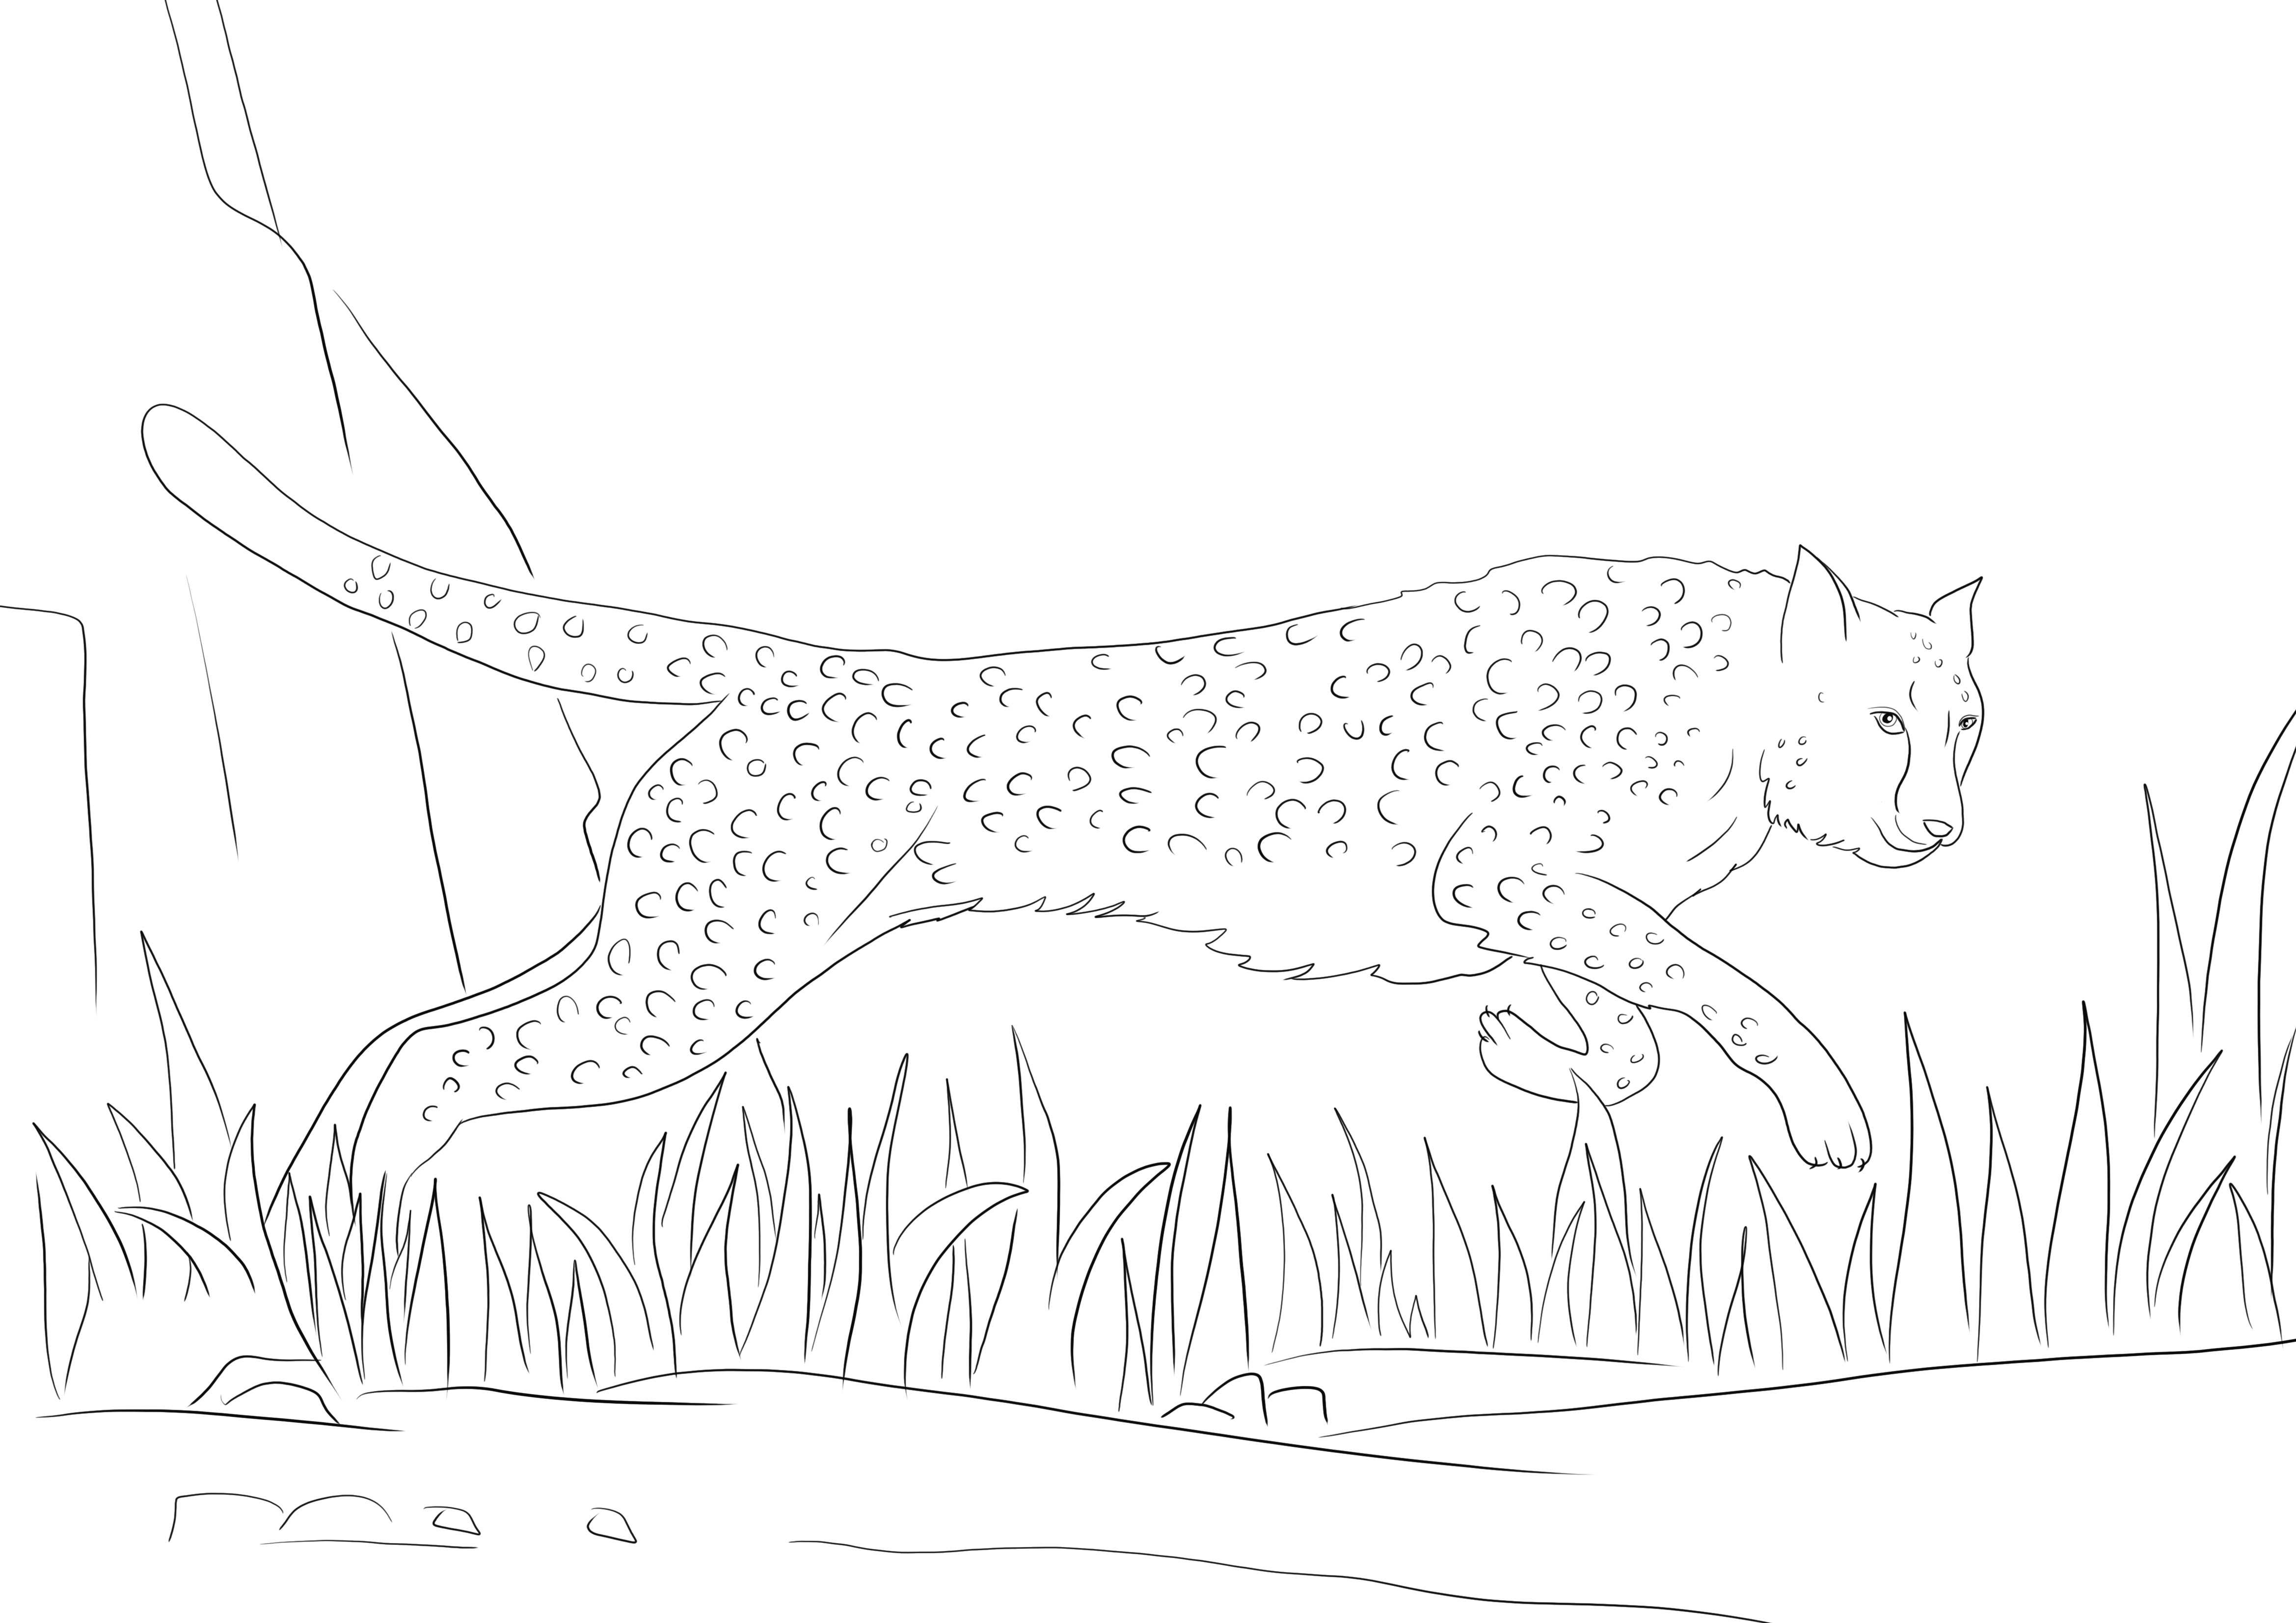 Cheetah corre e espera ser impressa gratuitamente e colorida por crianças